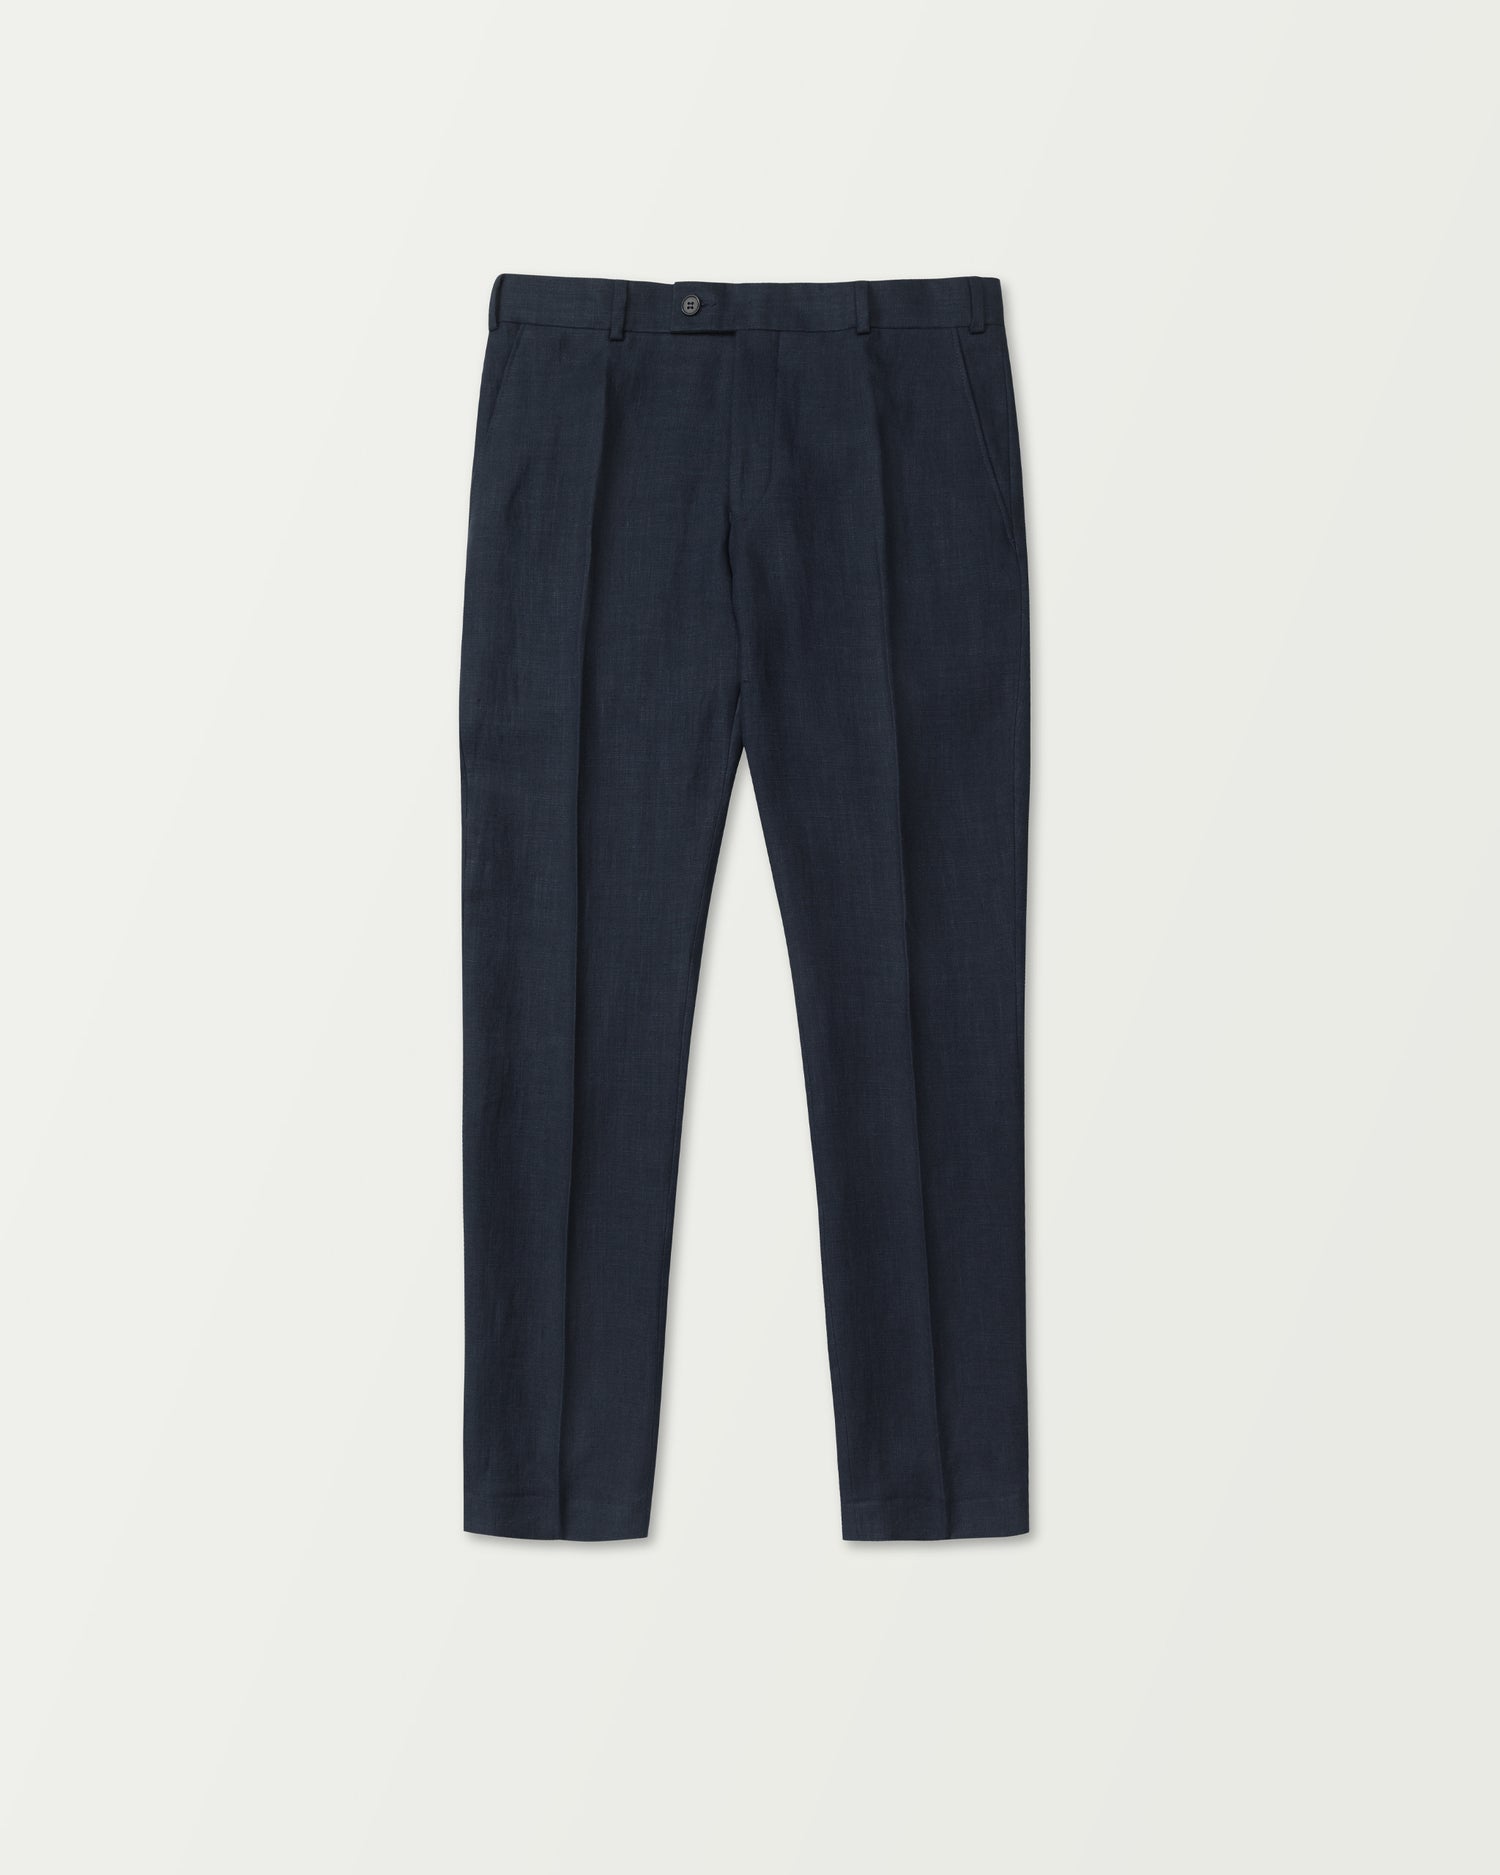 Linen Trousers in Dark Blue (8635765391690)